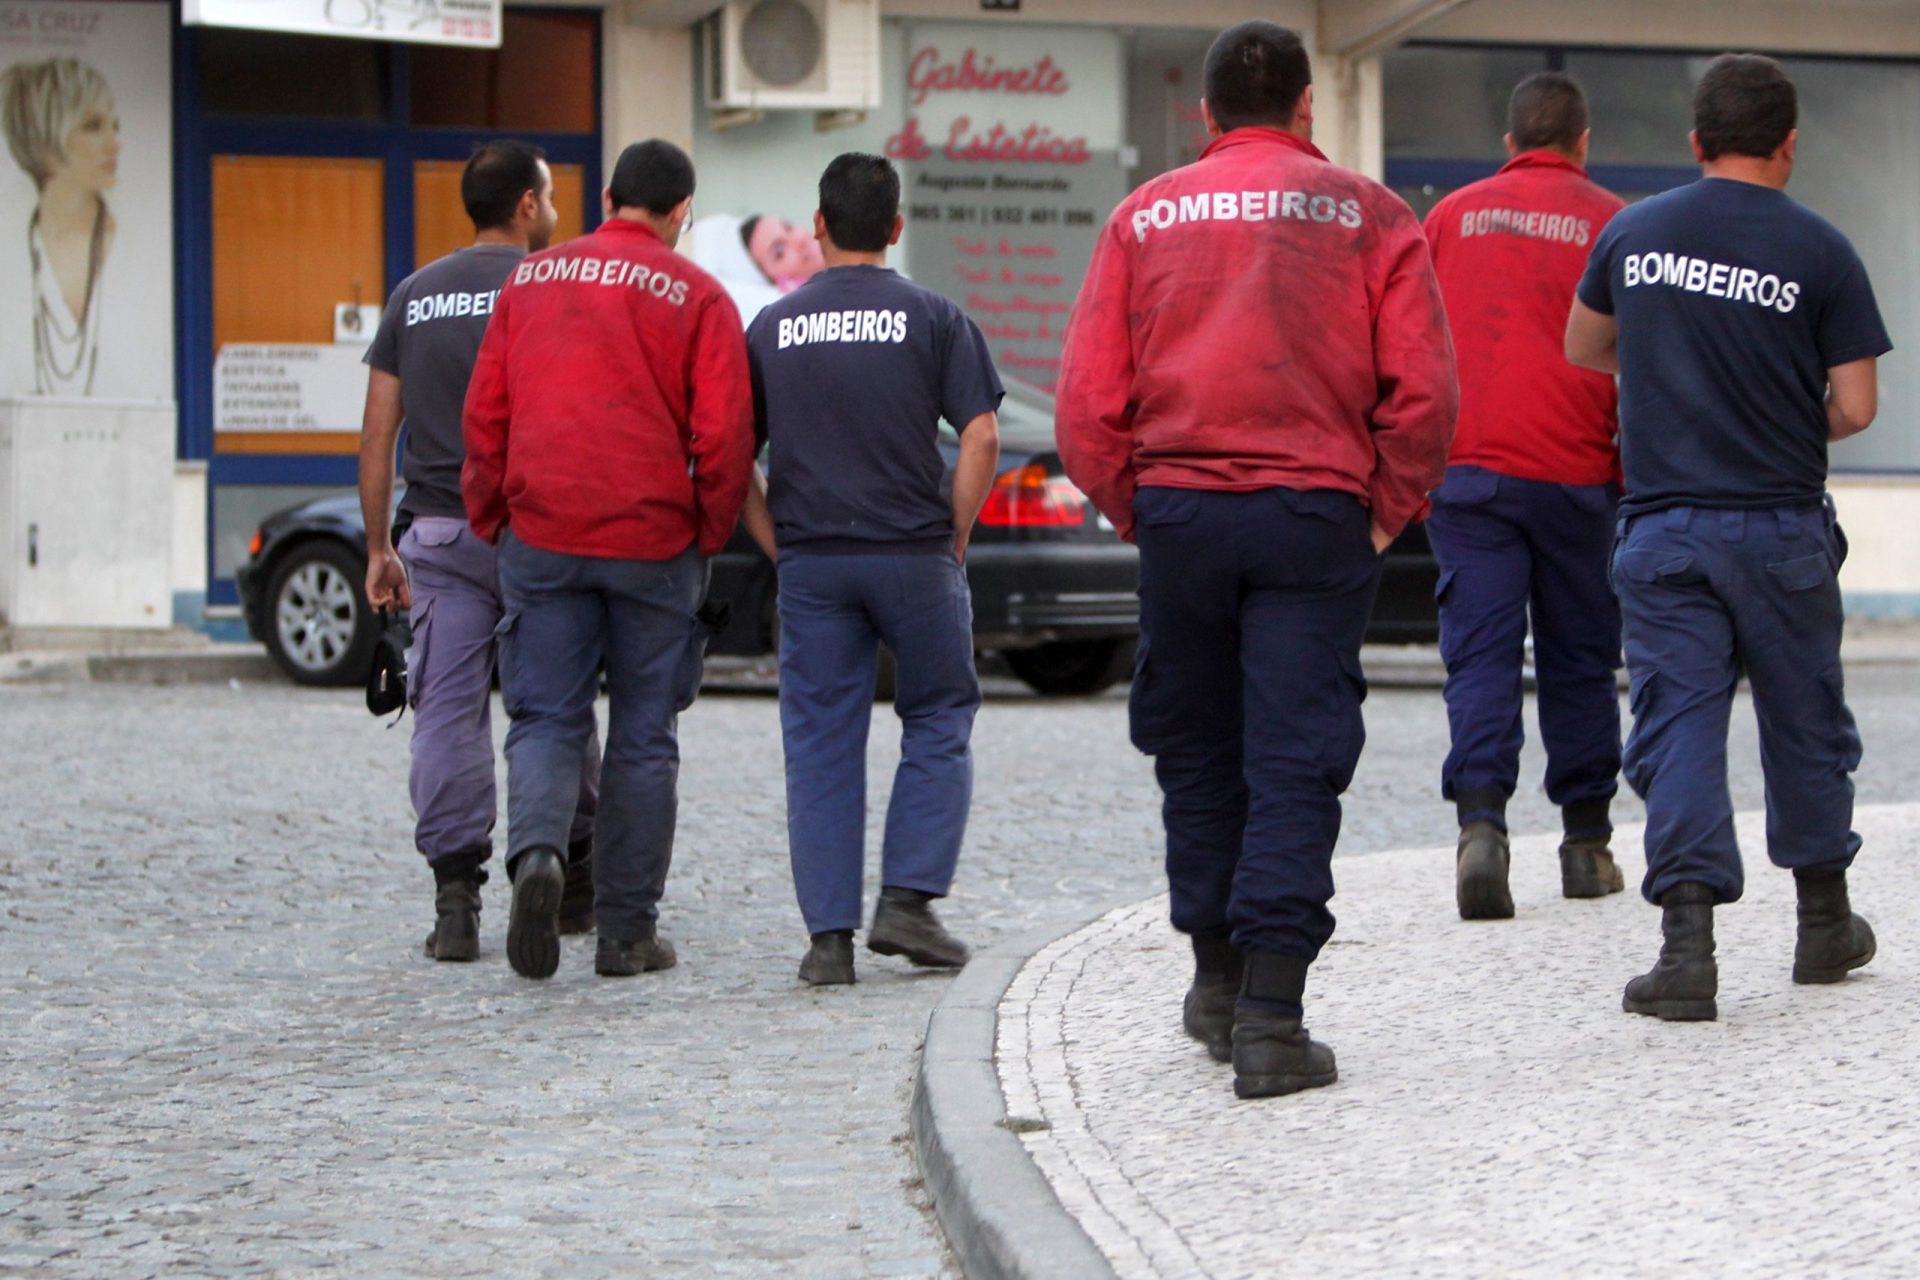 Mais de 700 bombeiros profissionais manifestam-se em Lisboa